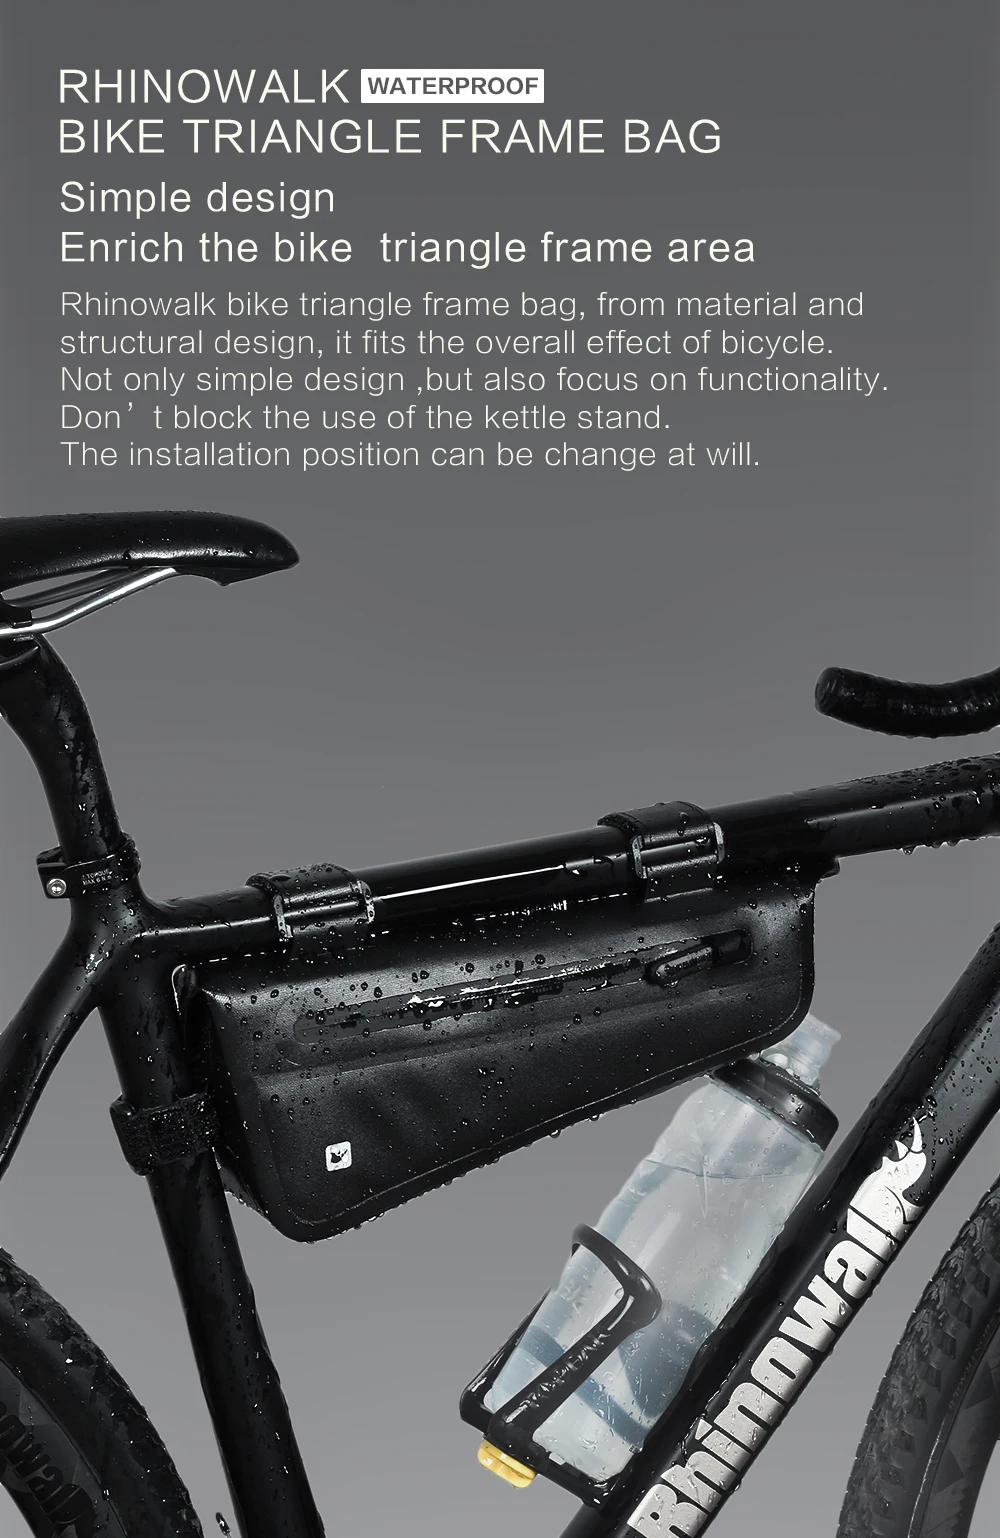 Rhinowalk 1.5L Waterproof Top Tube Bicycle Bag Hard Shell Bike Bag Stable Cycling Frame Bag Bike Accessories for  Road bike